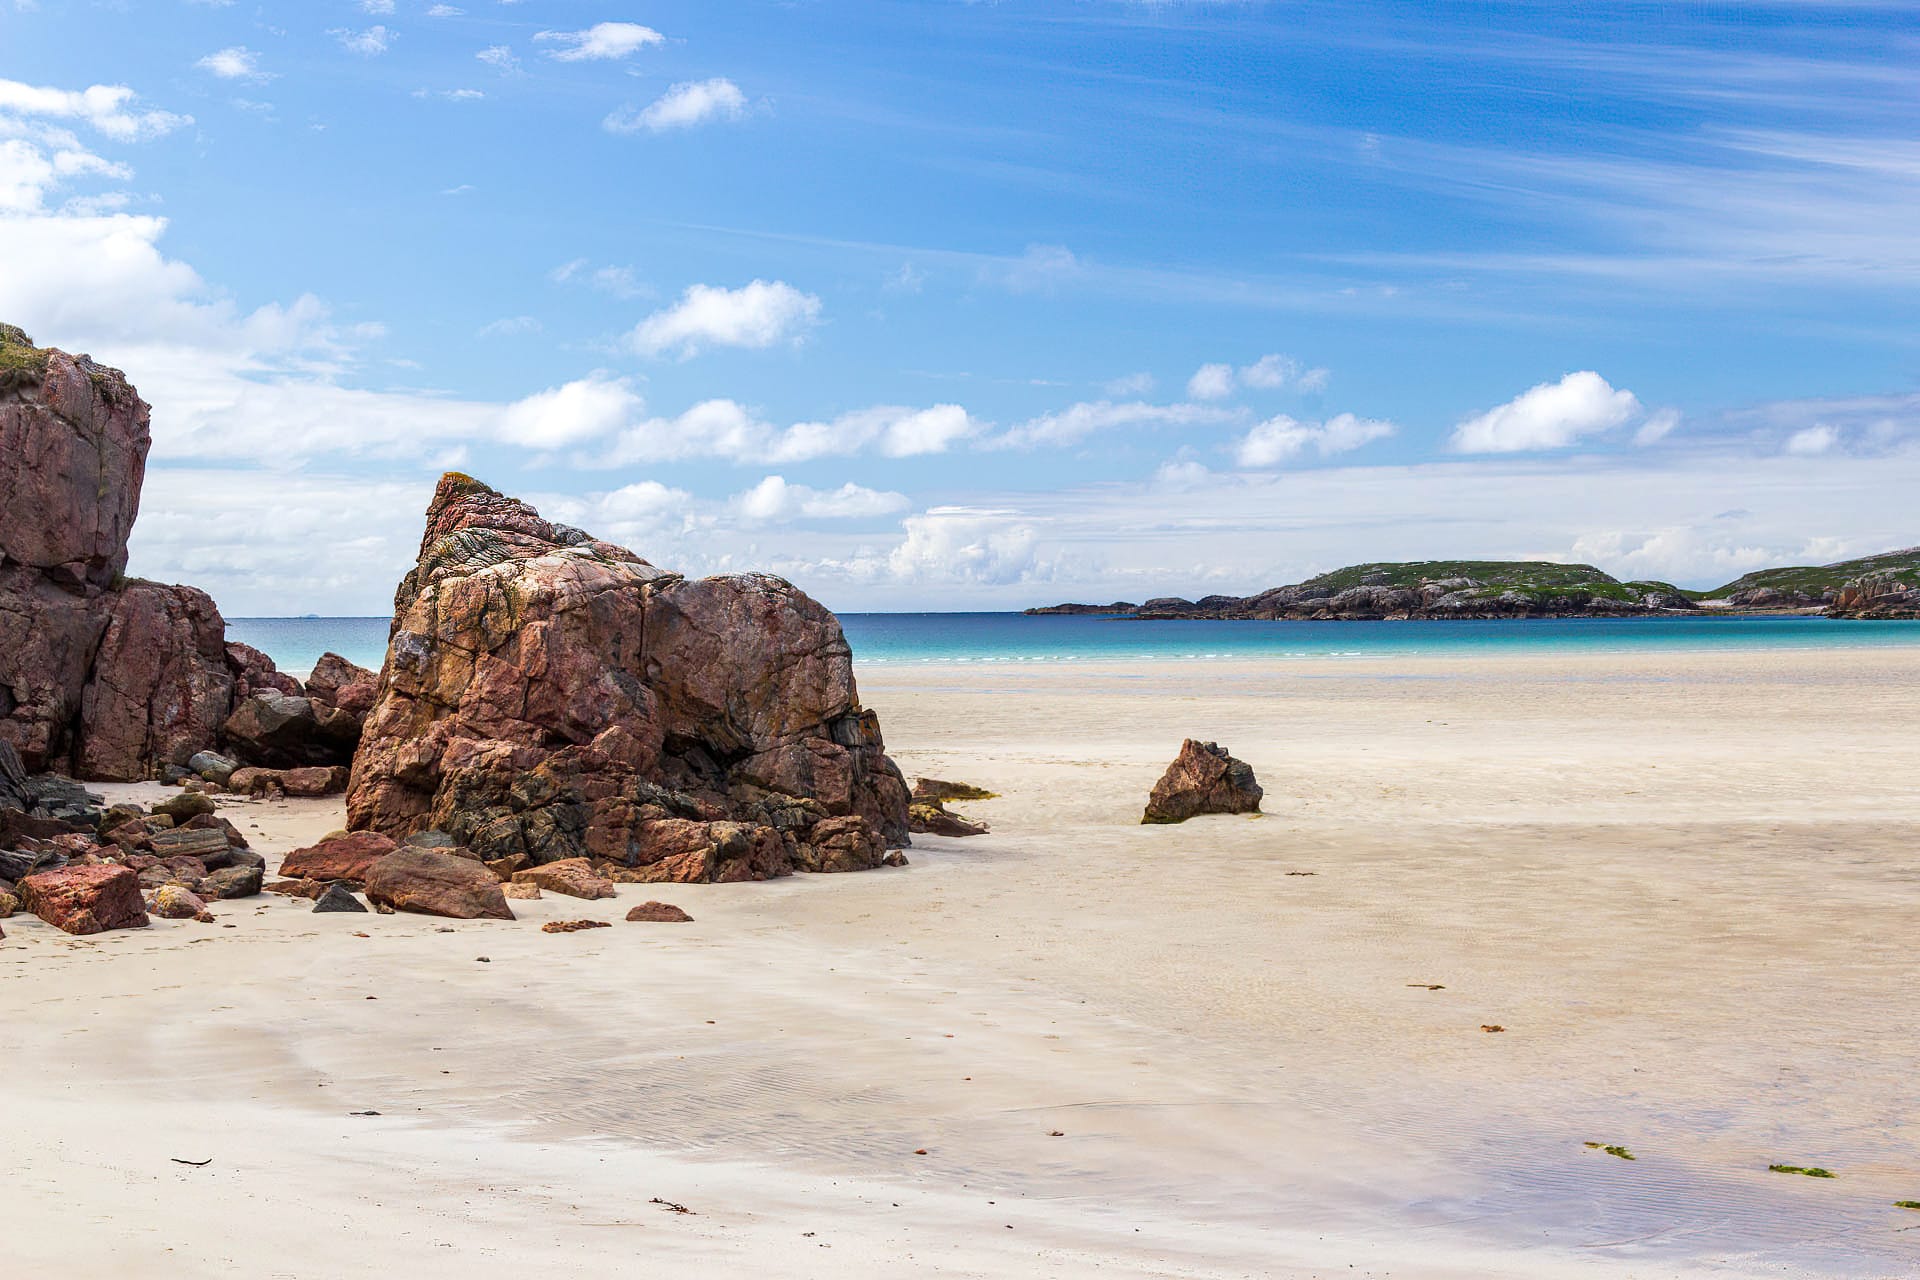 Ein rötlicher Fels ragt aus dem Sand eines weiten Strandes. Im Hintergrund ist das Meer zu sehen.